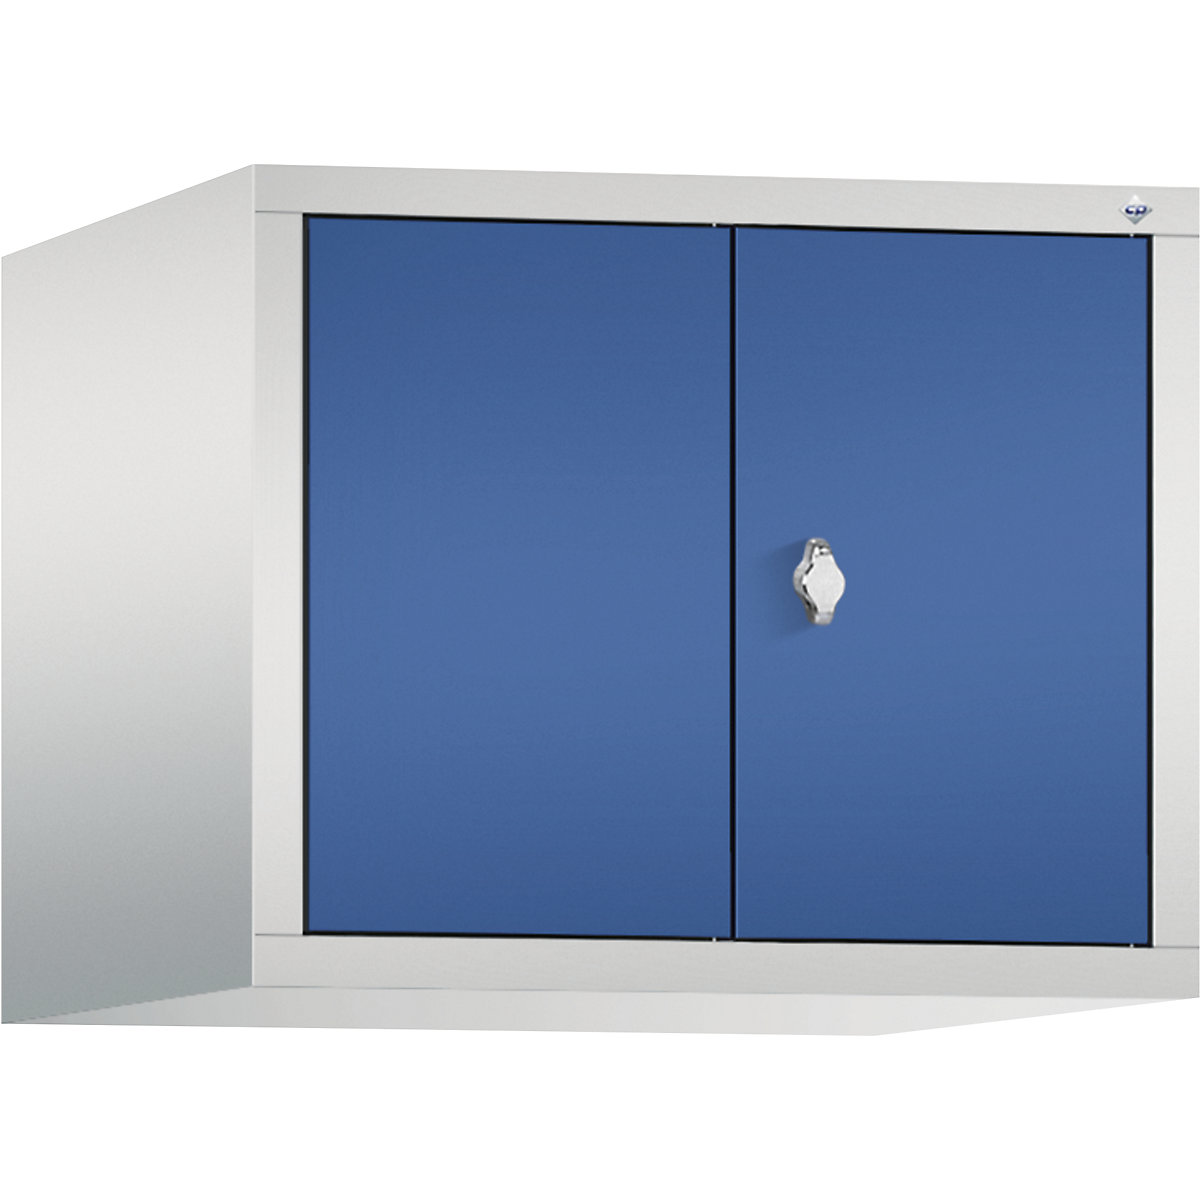 C+P – Dogradni ormar CLASSIC, vrata koja se zatvaraju jedna prema drugima, 2 odjela, širina odjela 300 mm, u svijetlosivoj / encijan plavoj boji